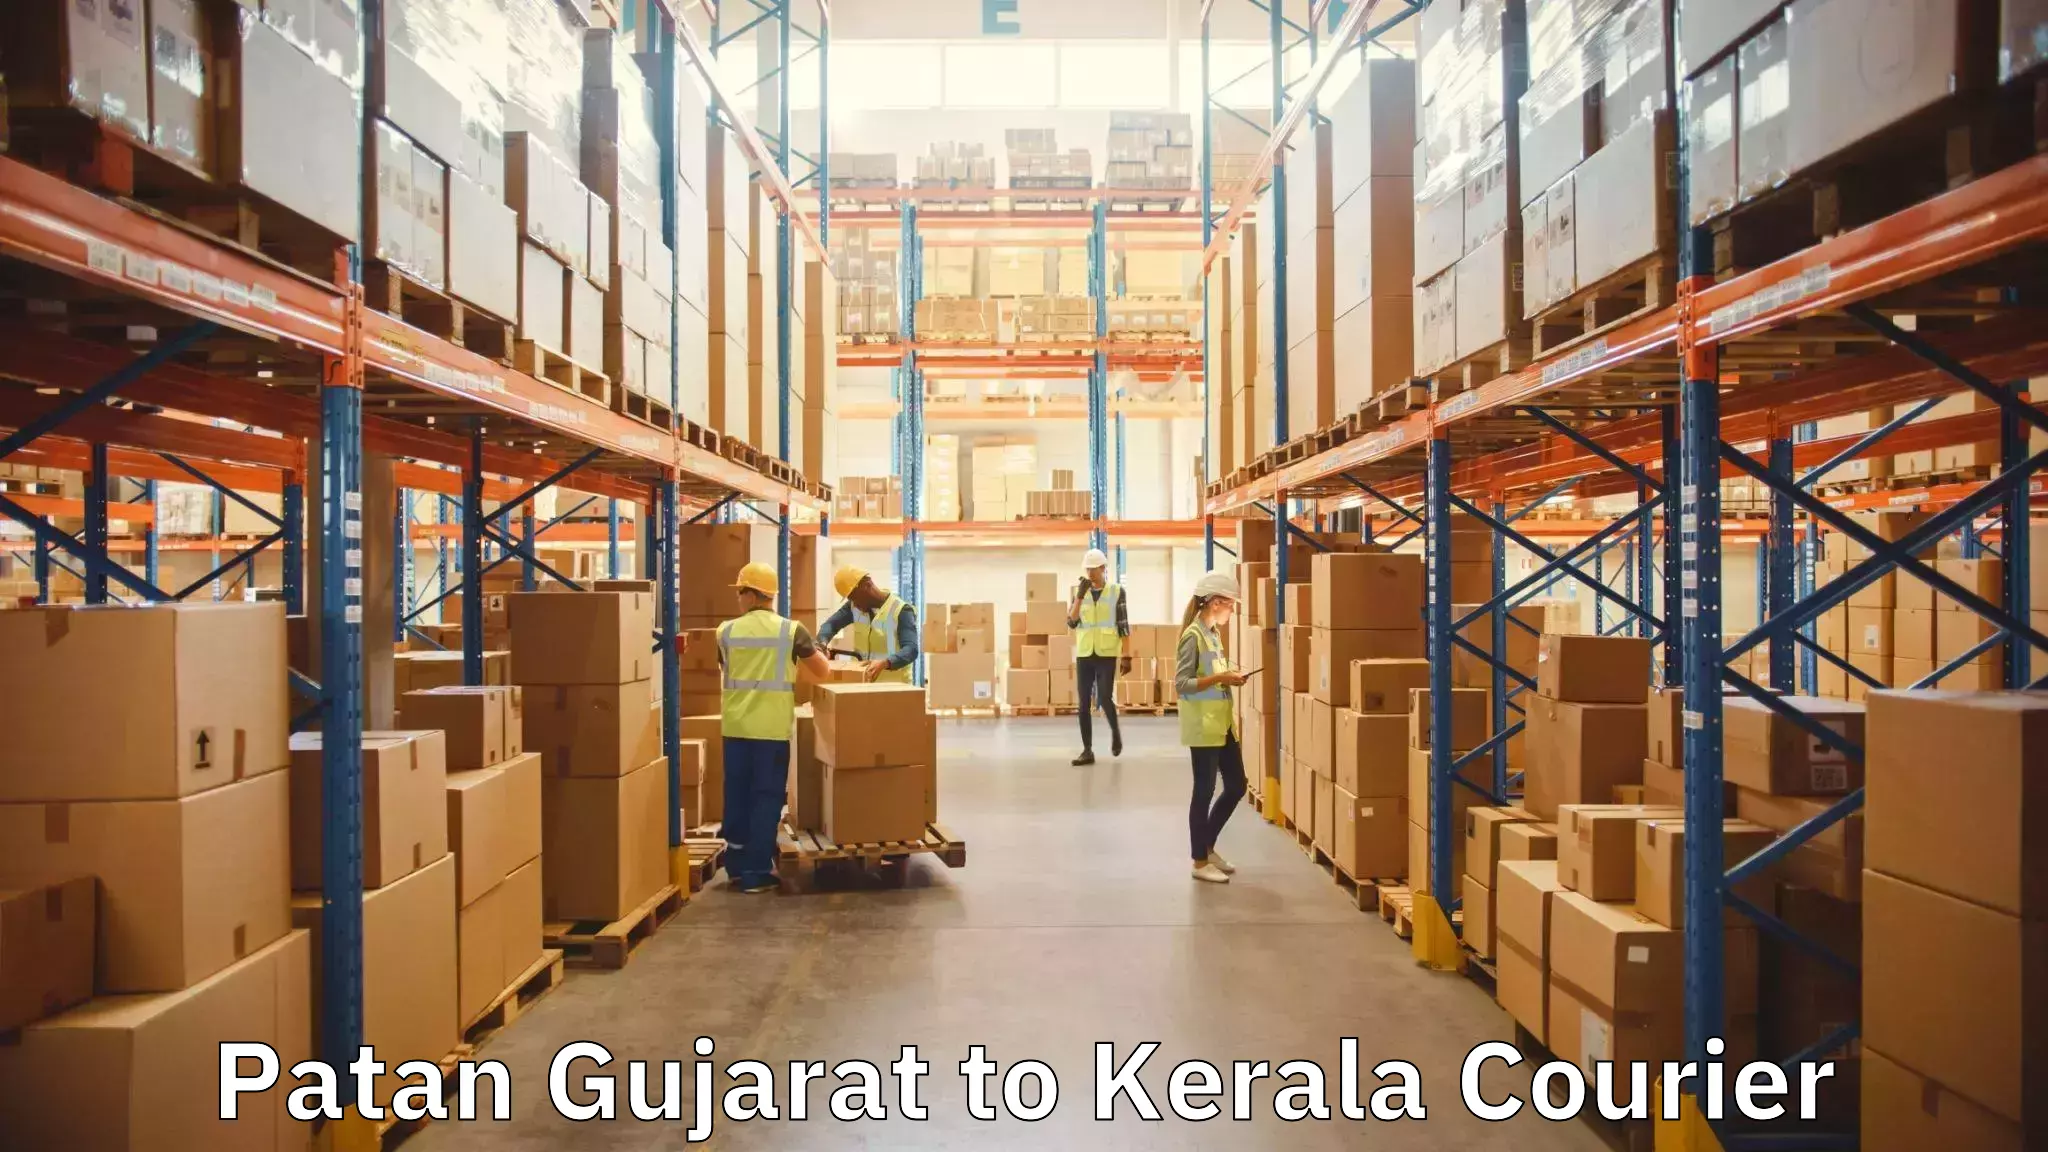 Furniture moving experts Patan Gujarat to Kerala